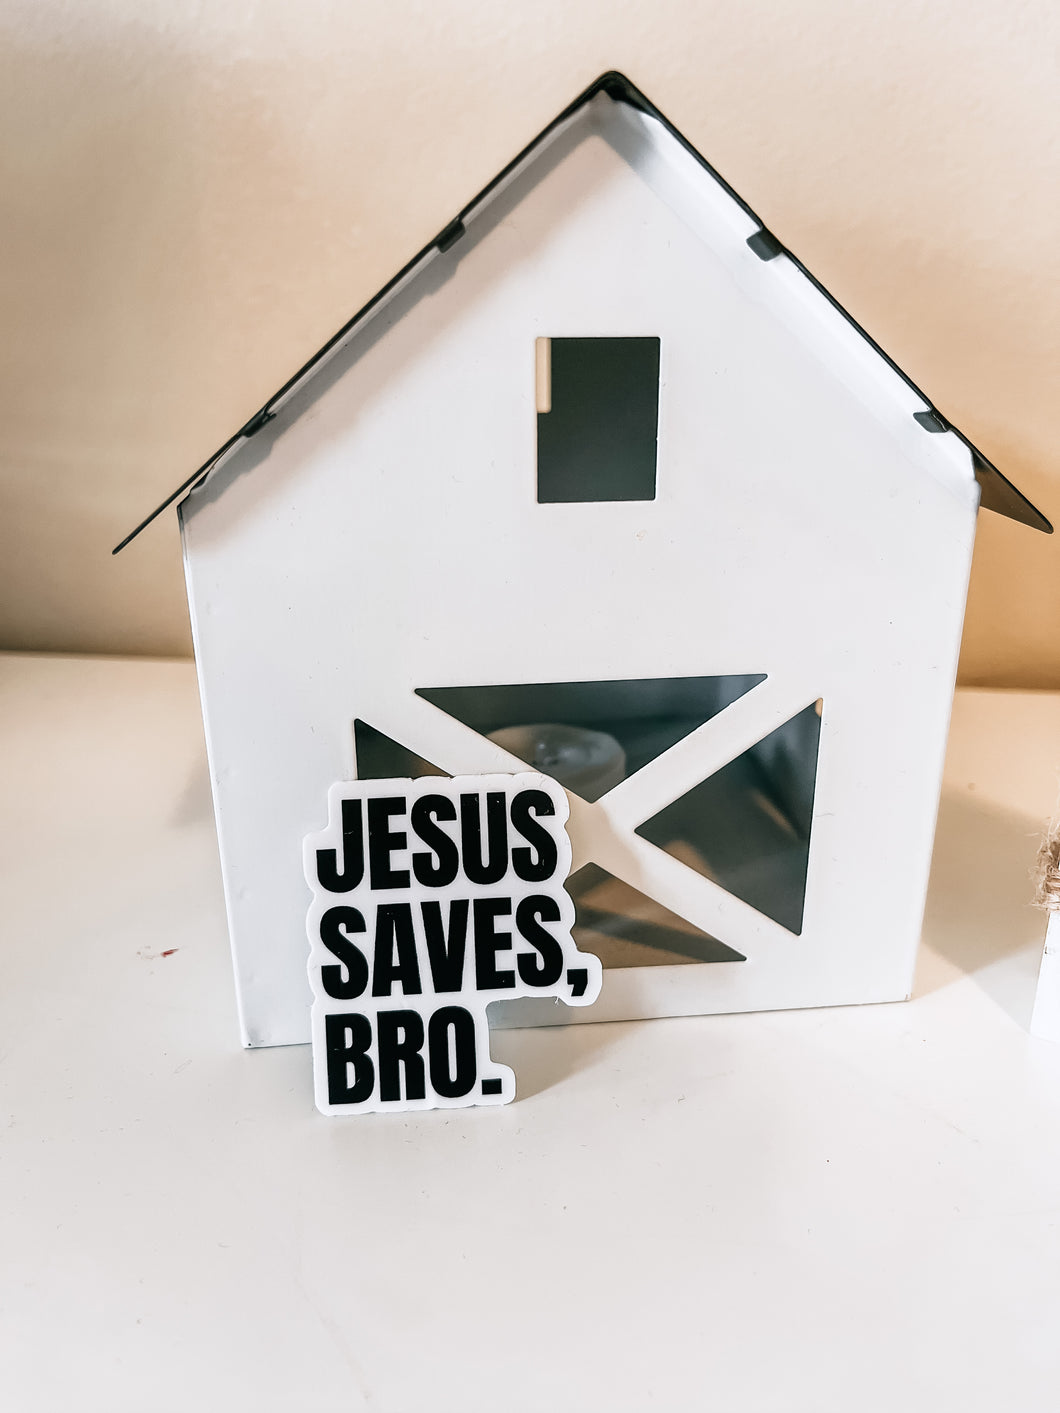 Jesus saves bro sticker